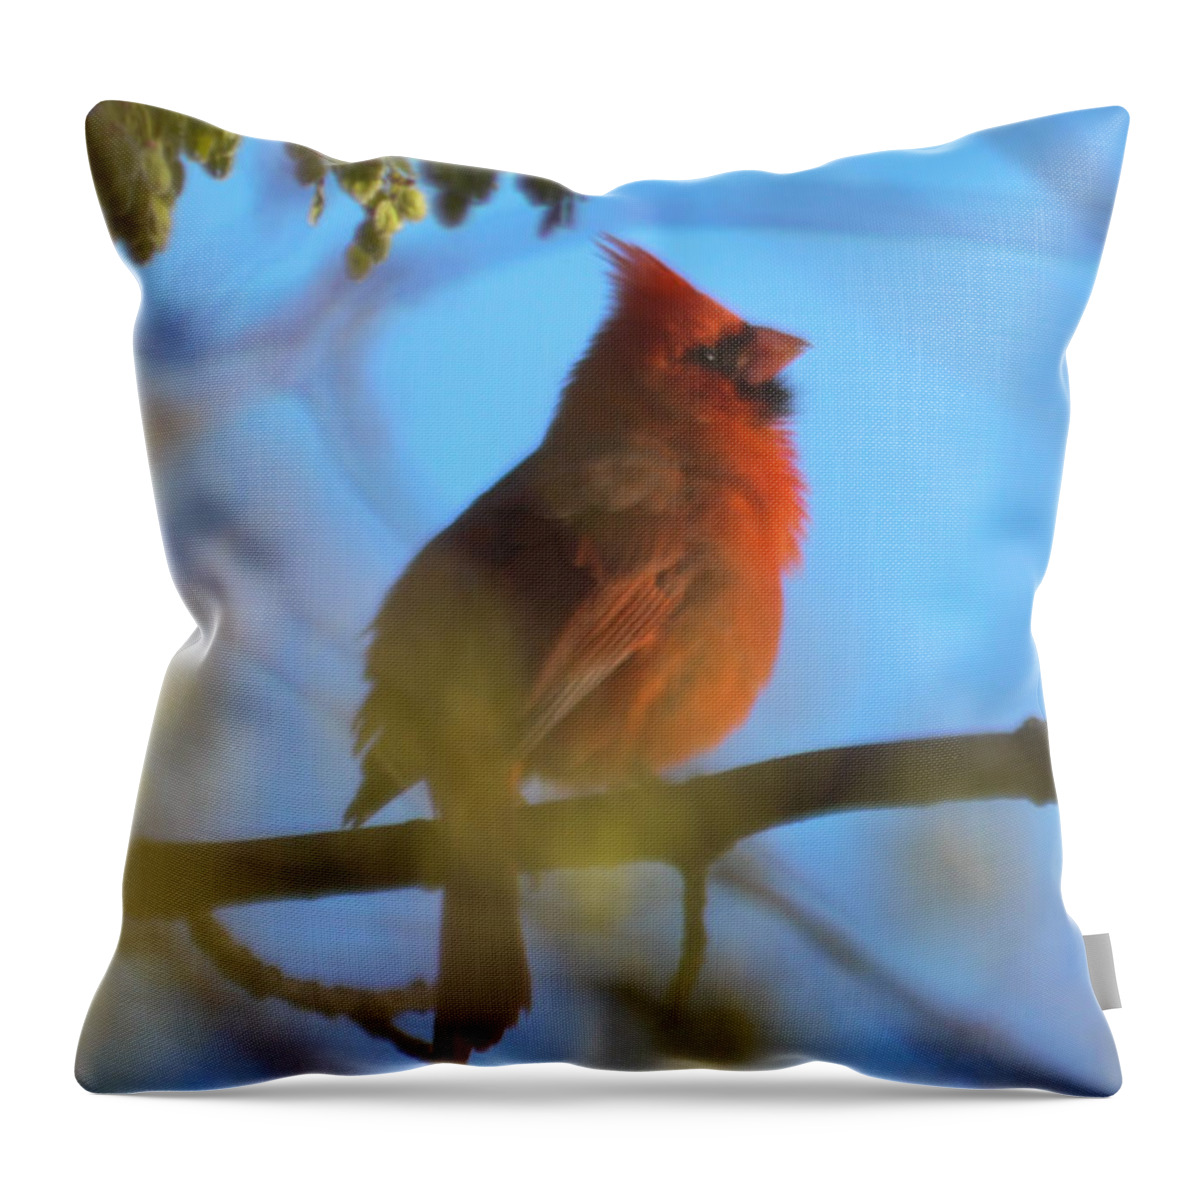 Bird Throw Pillow featuring the photograph Northern Cardinal by Ronald Grogan